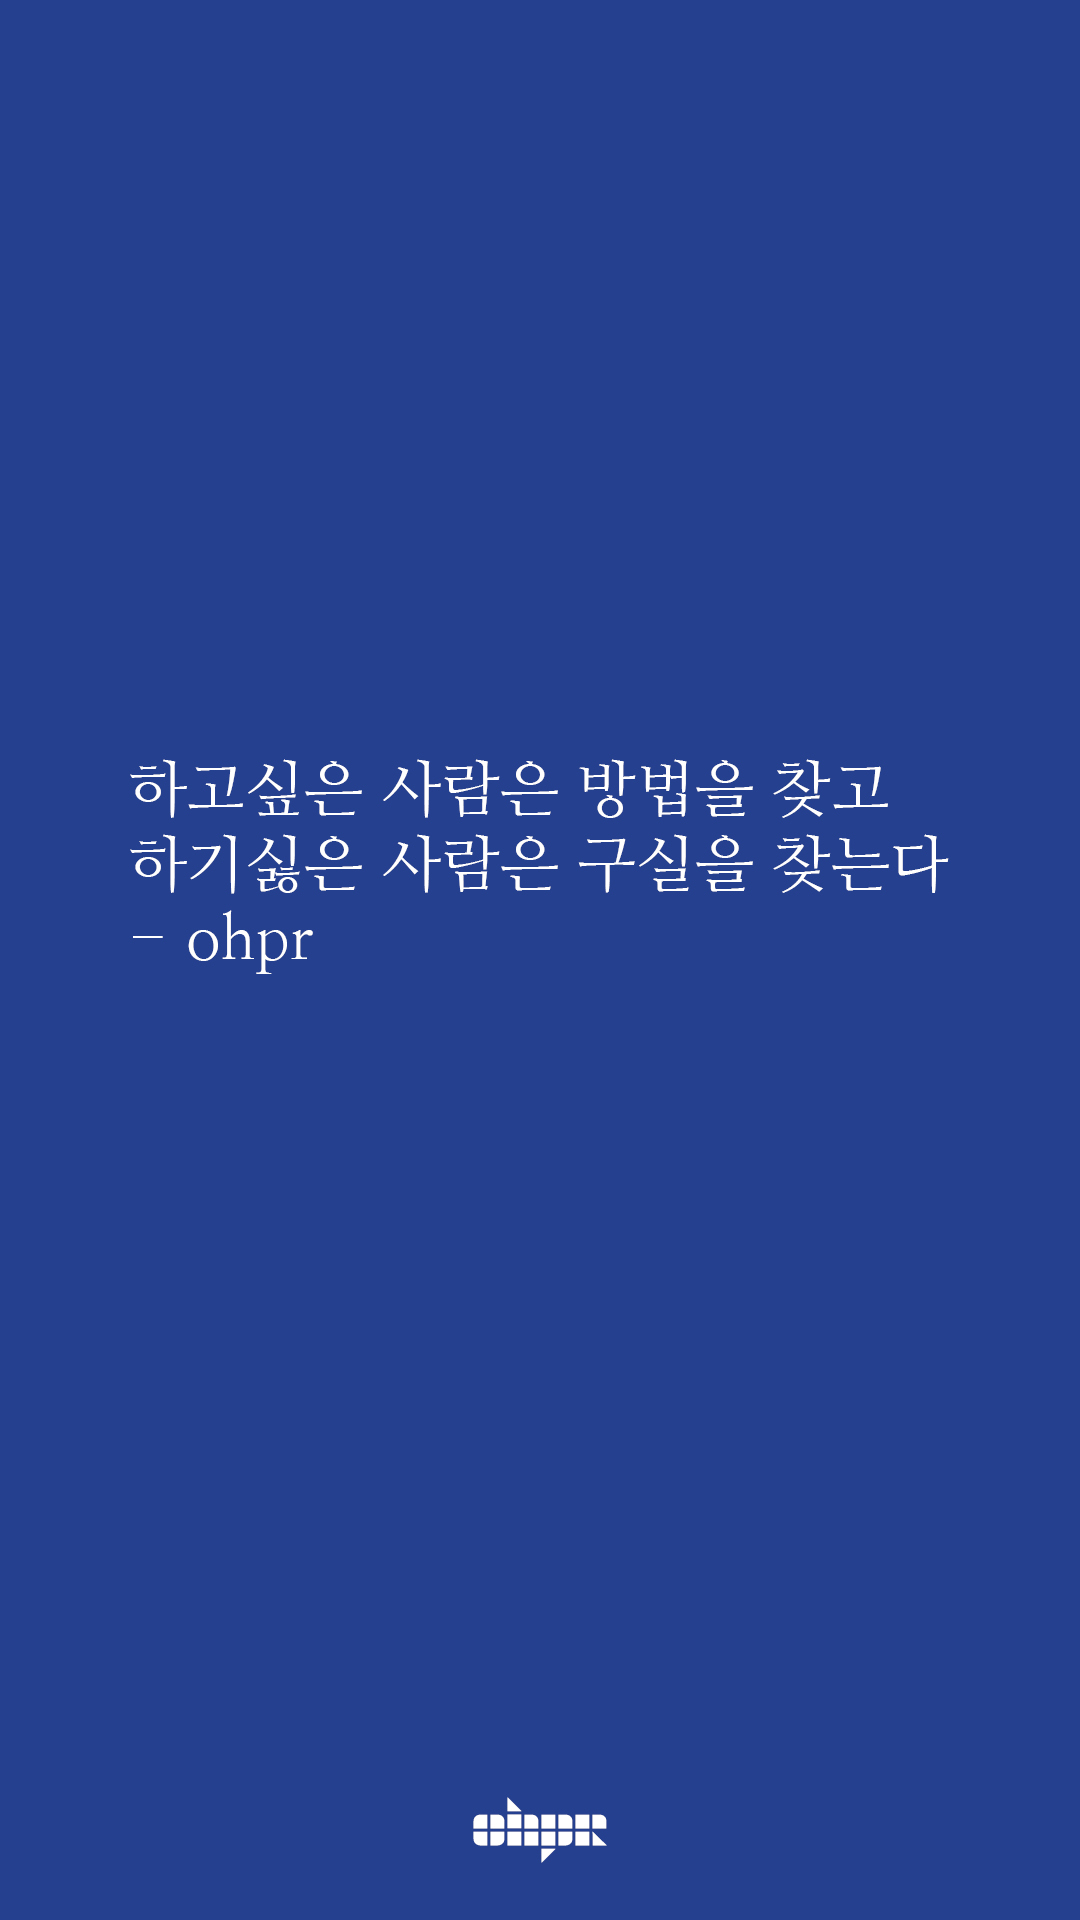 ohpr_wording